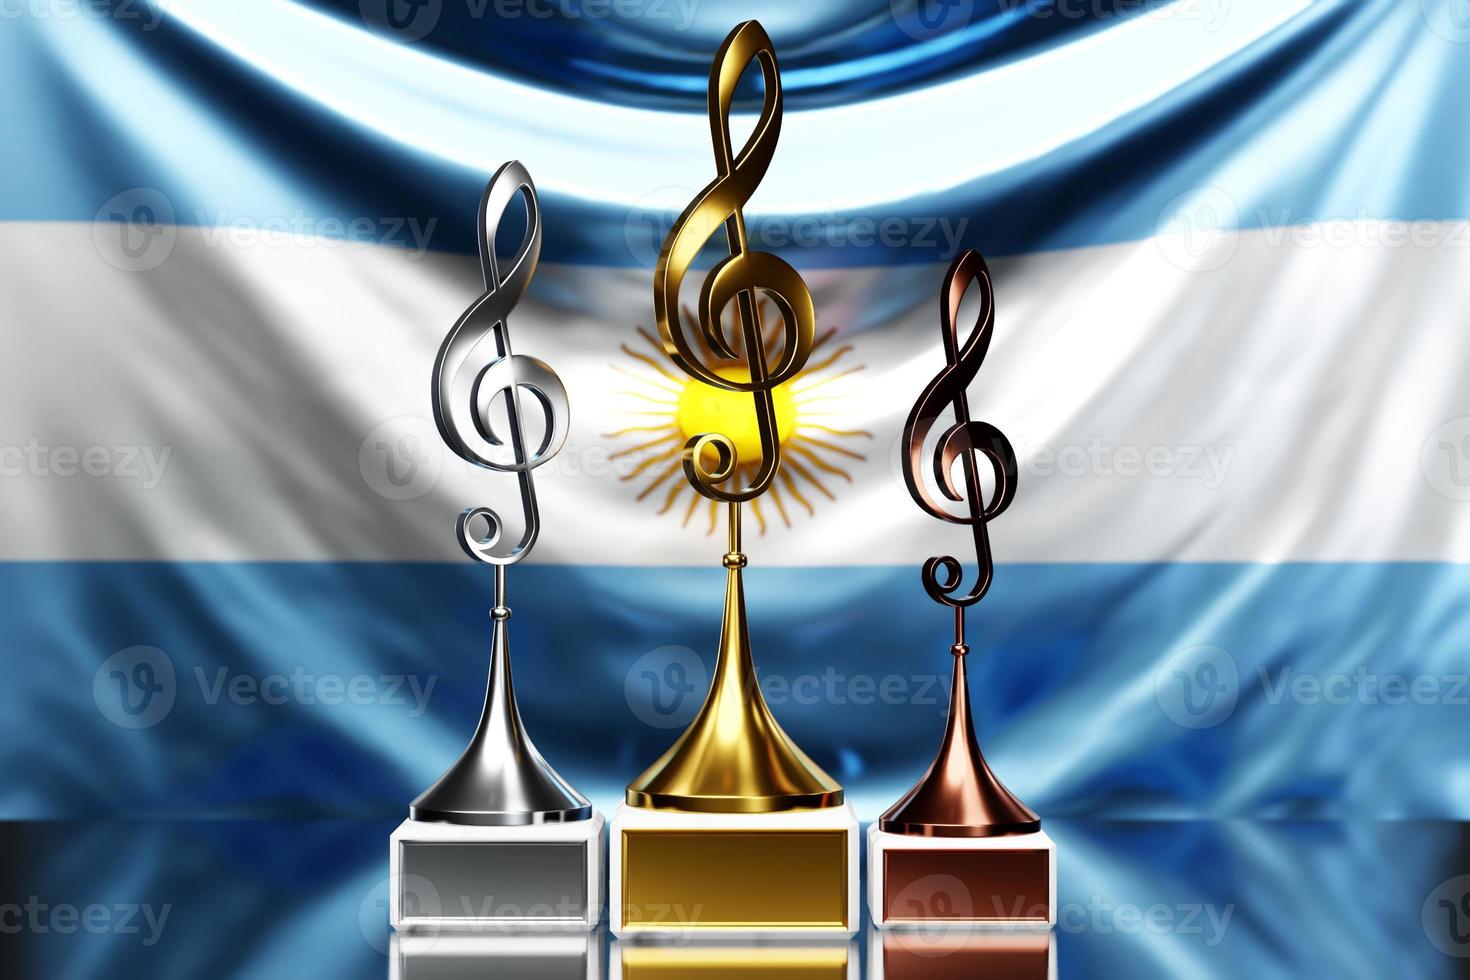 premios treble clef por ganar el premio de música en el contexto de la bandera nacional de argentina foto